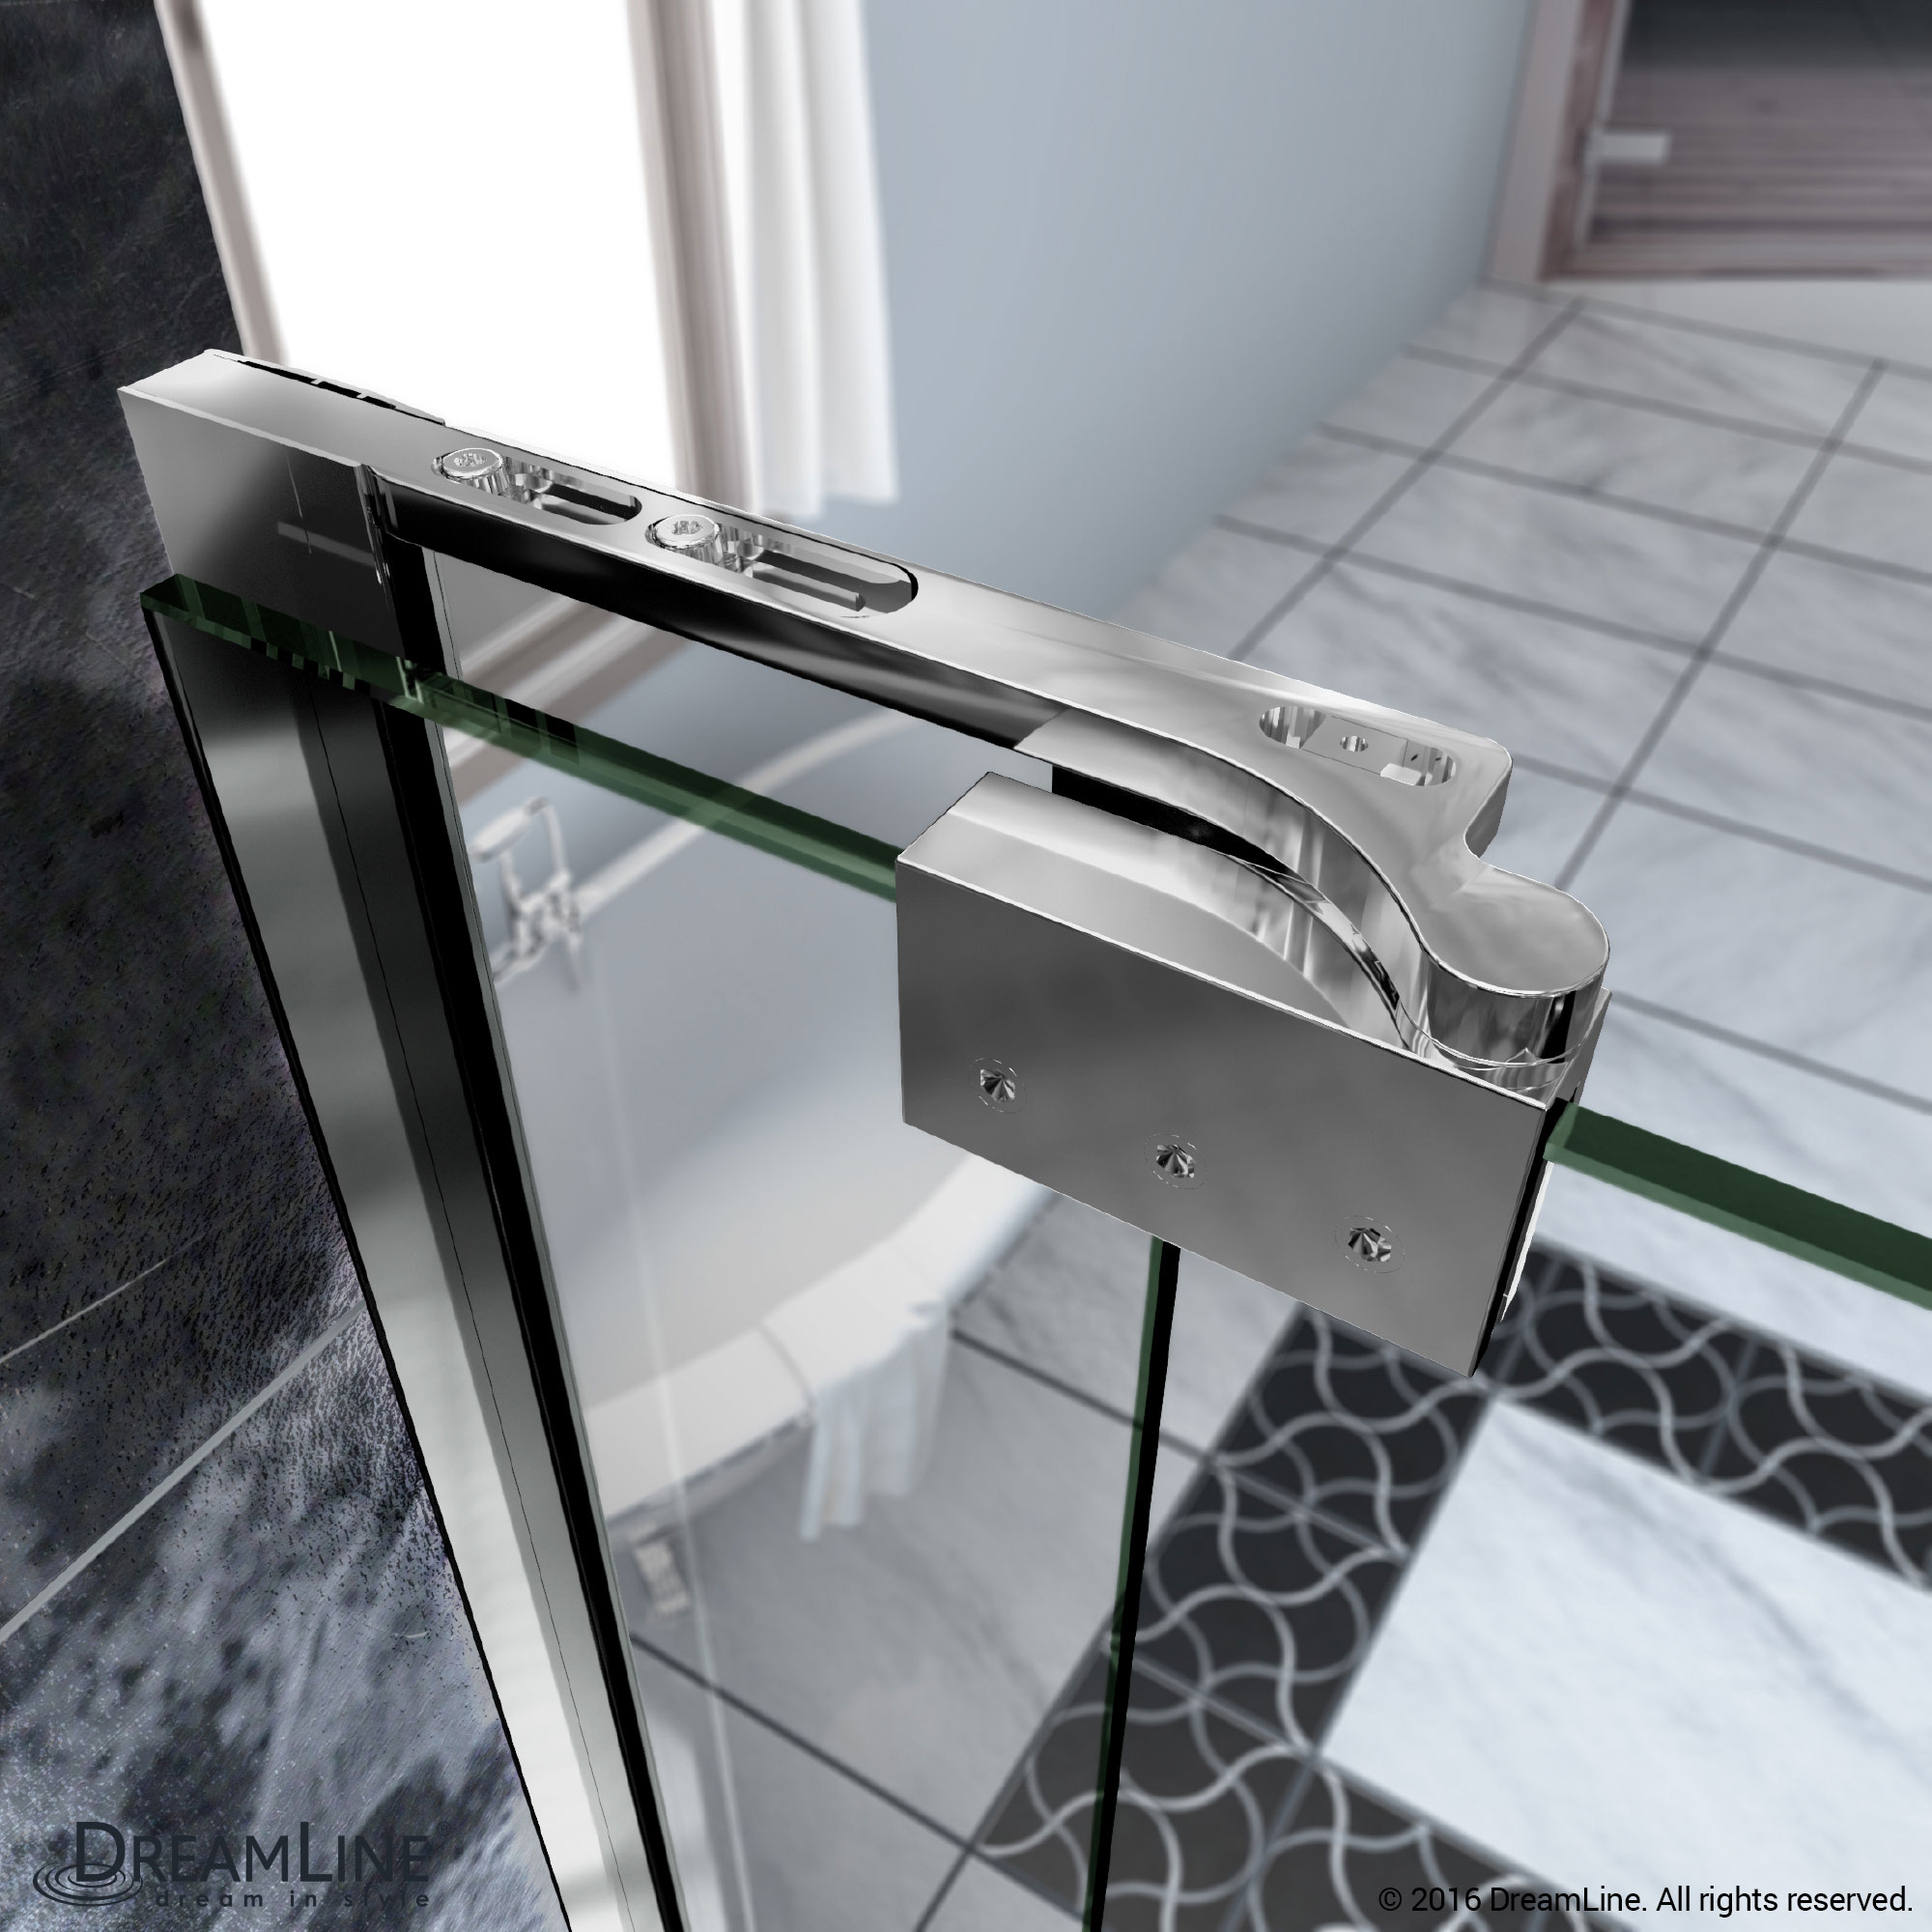 DreamLine SHDR-4241728-01 Allure 41 to 42 in. Frameless Pivot Clear Glass Shower Door In Chrome